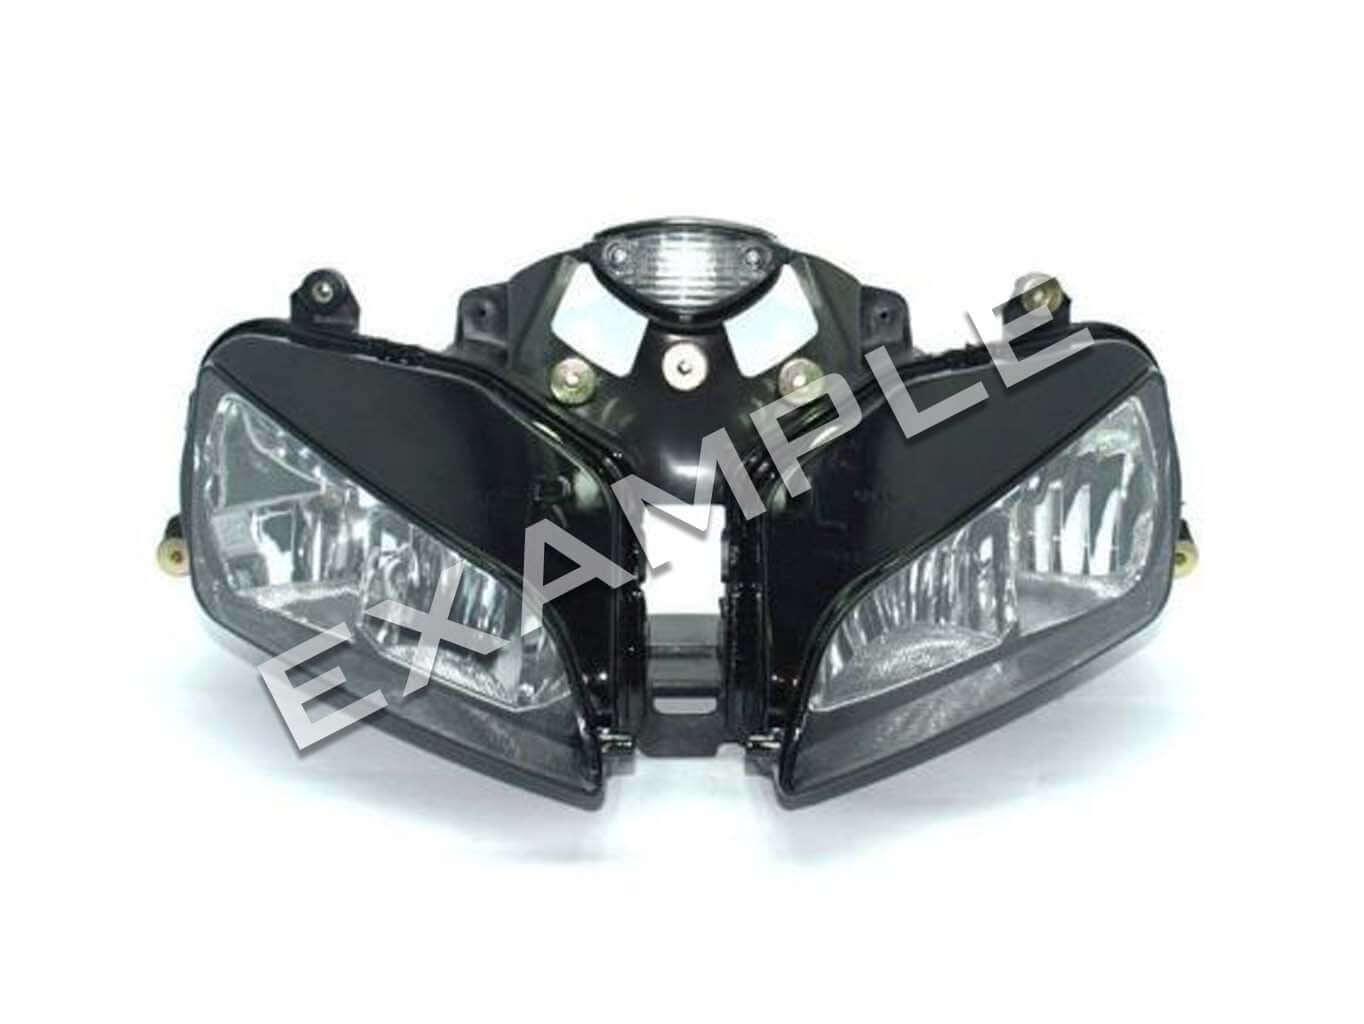 Honda CBR600RR (03-06) - Bi-LED koplamp verlichting upgrade kit